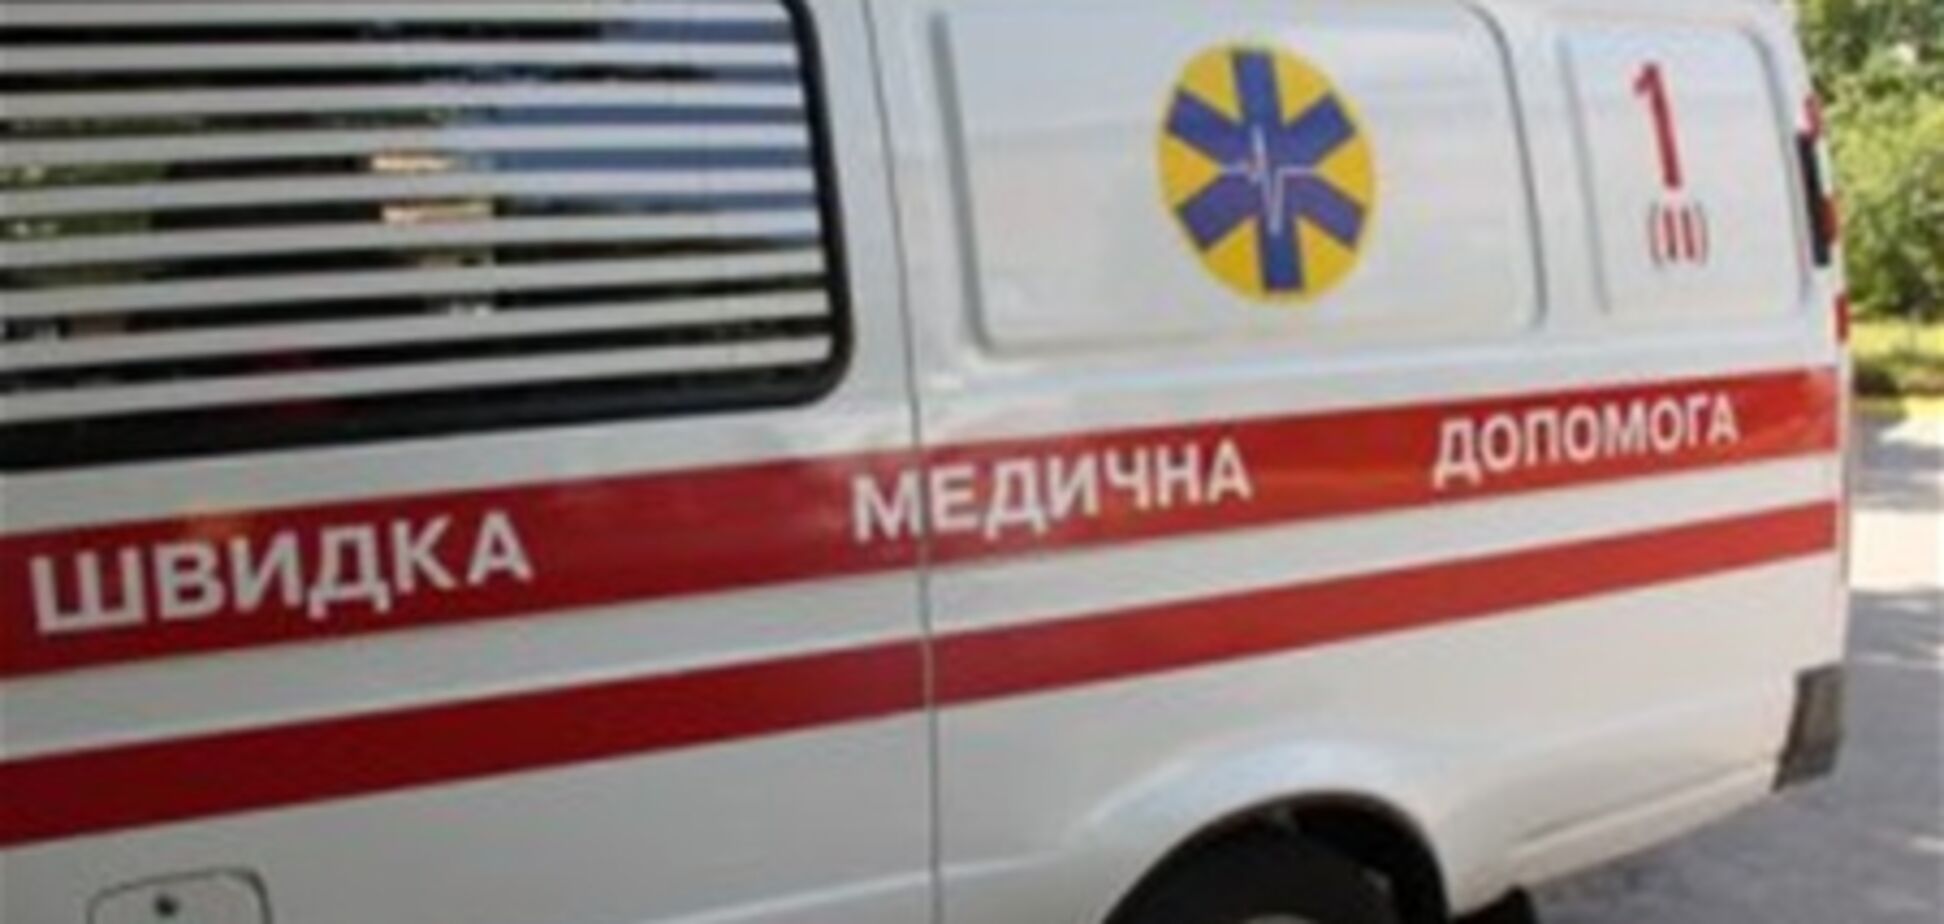 В Симферополе пьяный водитель врезался в троллейбус: есть жертвы